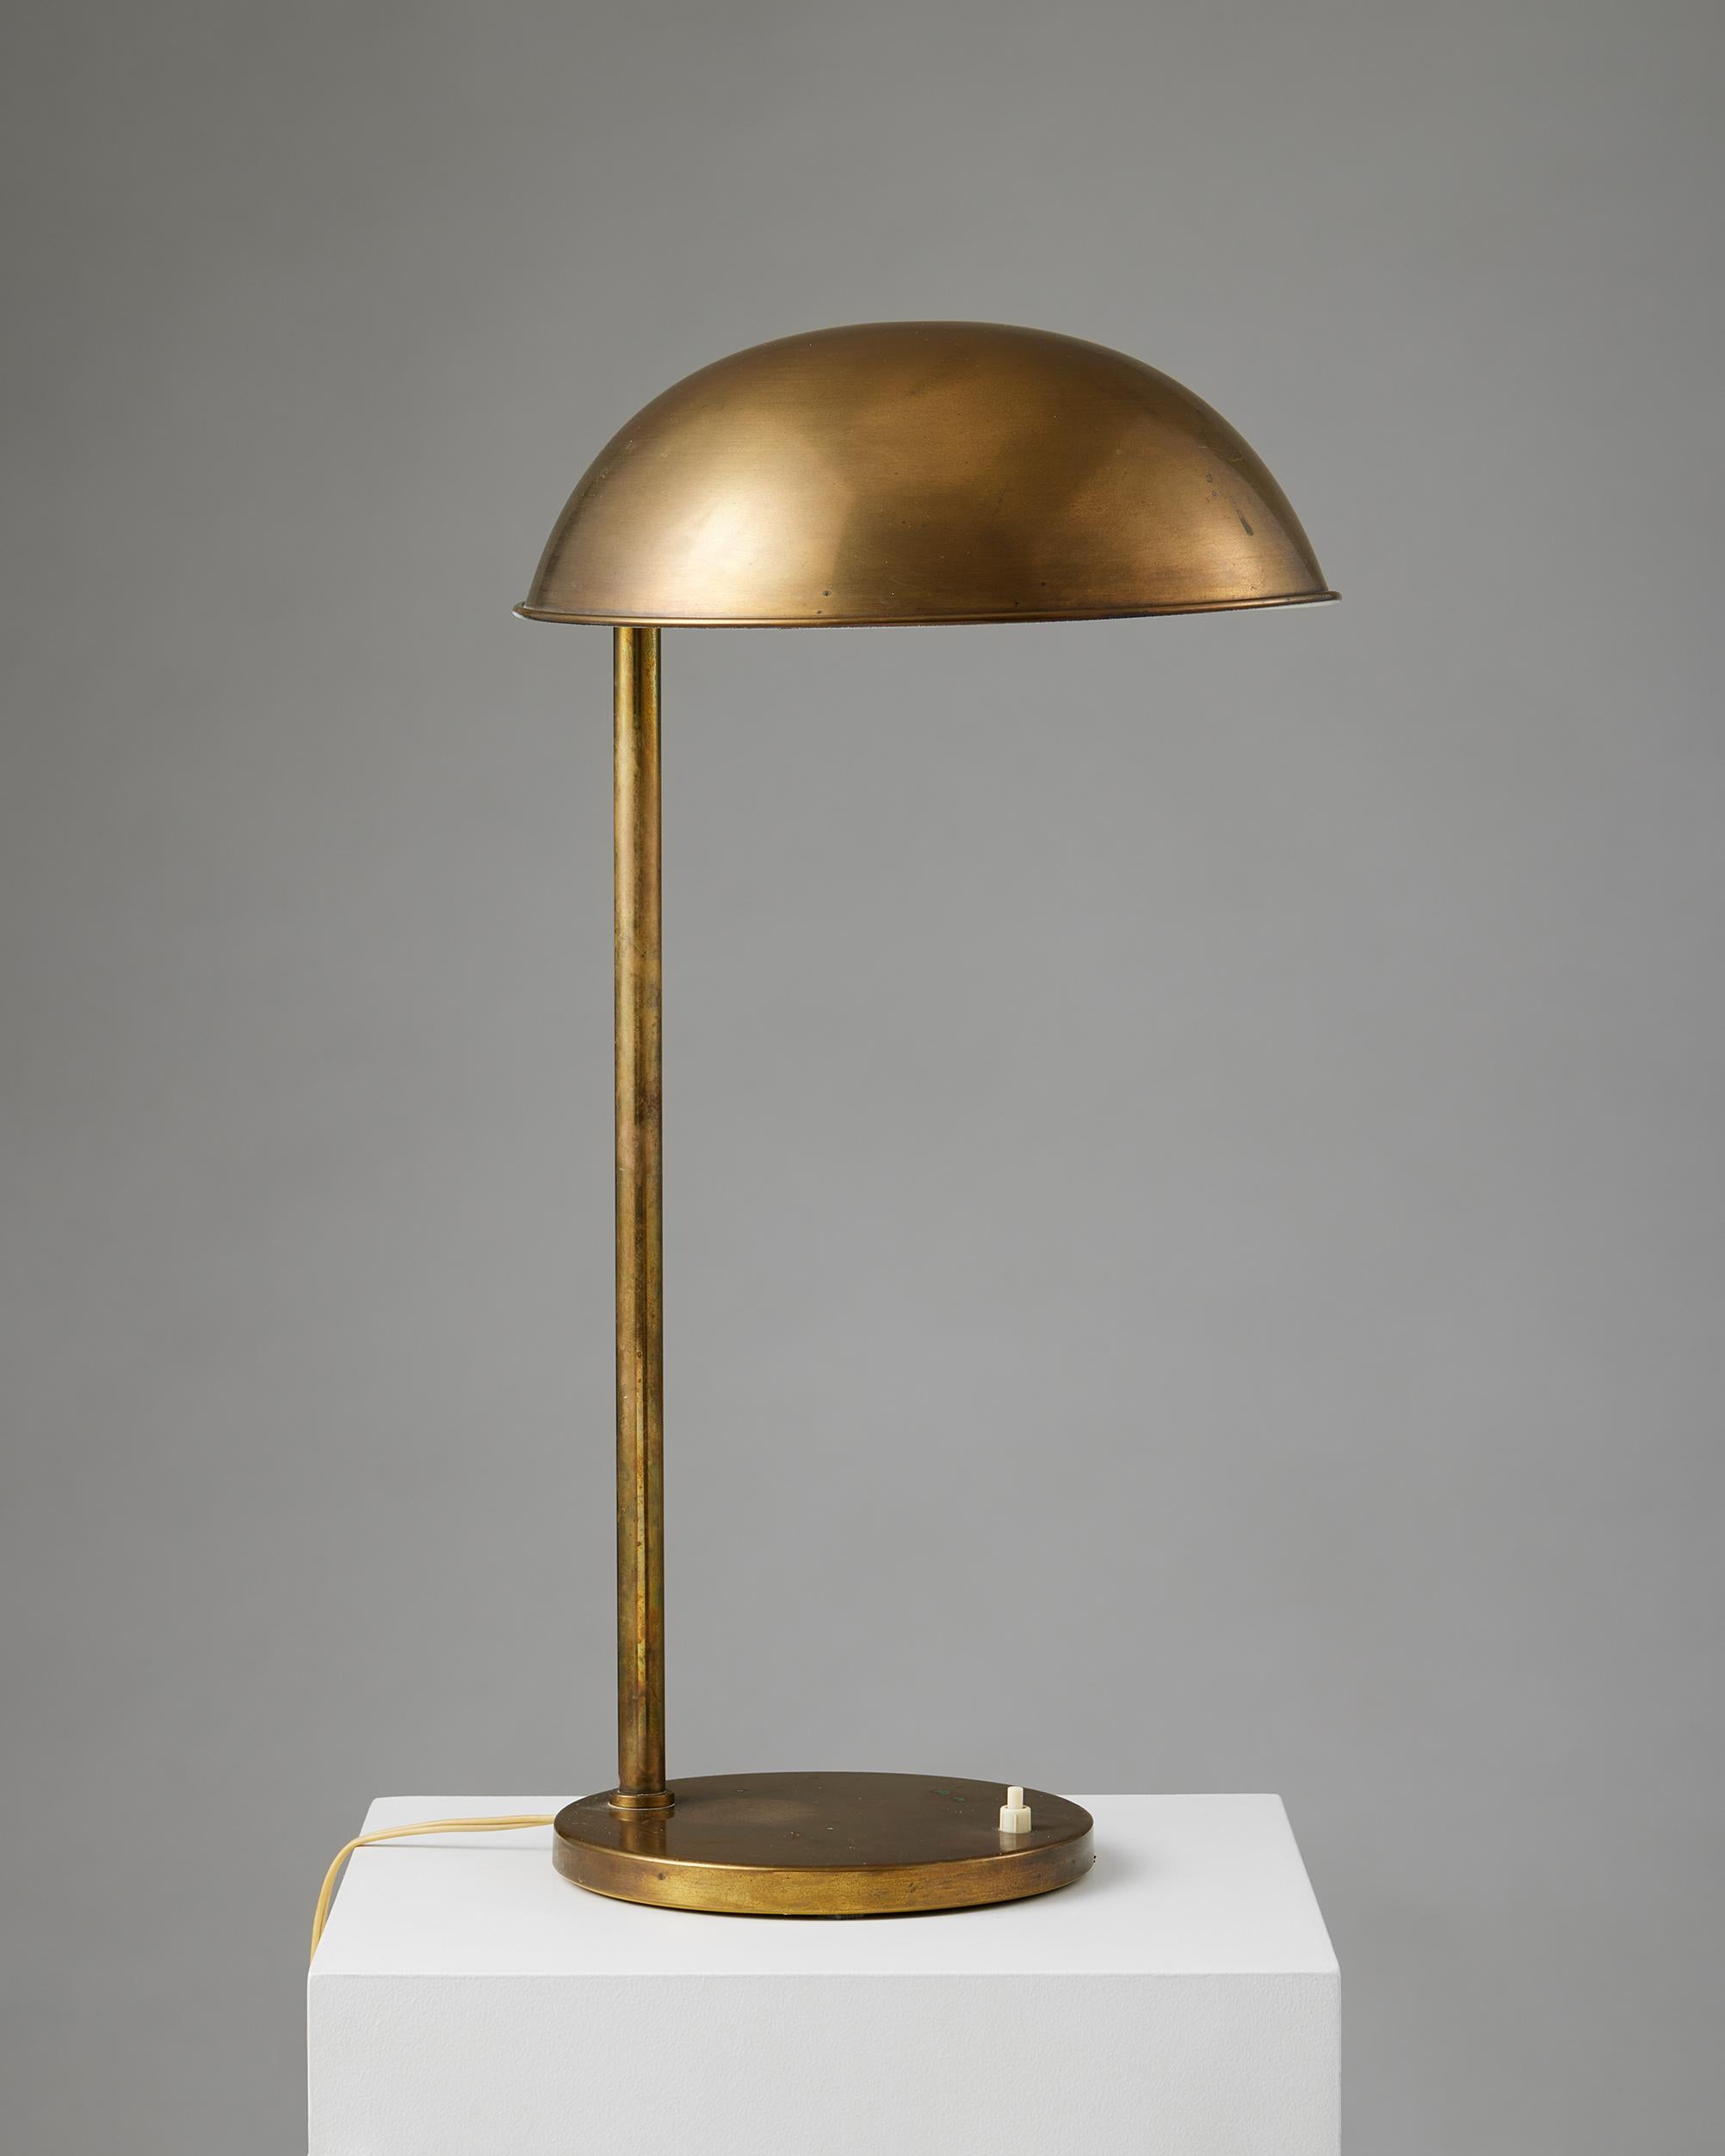 Table lamp, anonymous,
Denmark, 1960s.

Brass.

H: 61 cm
Base diameter: 21.5 cm
Shade diameter: 31 cm